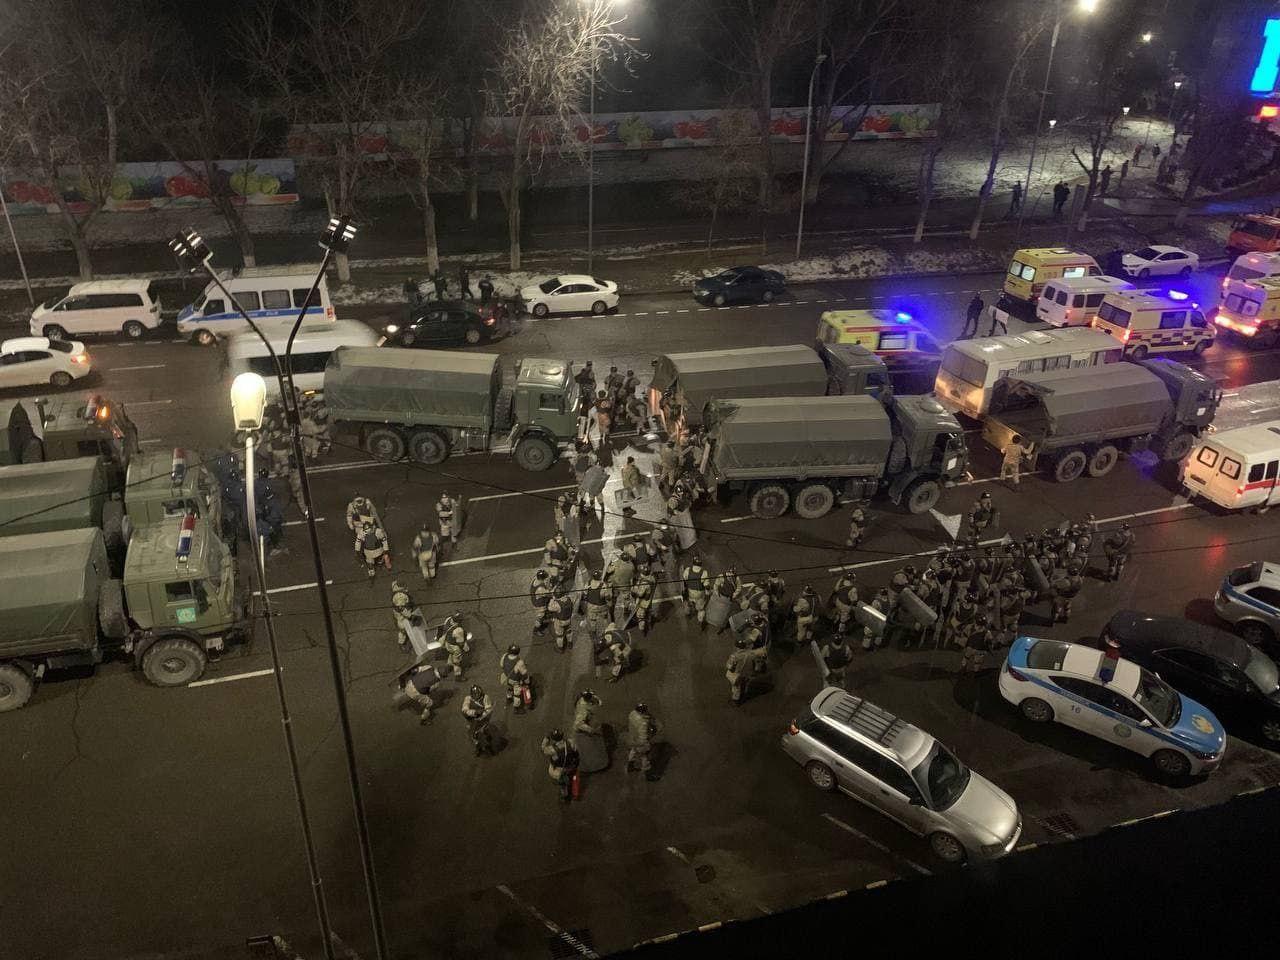 ​“Власть не падет”, - Токаев обратился к восставшим казахам, пока в центре Алматы гремят взрывы